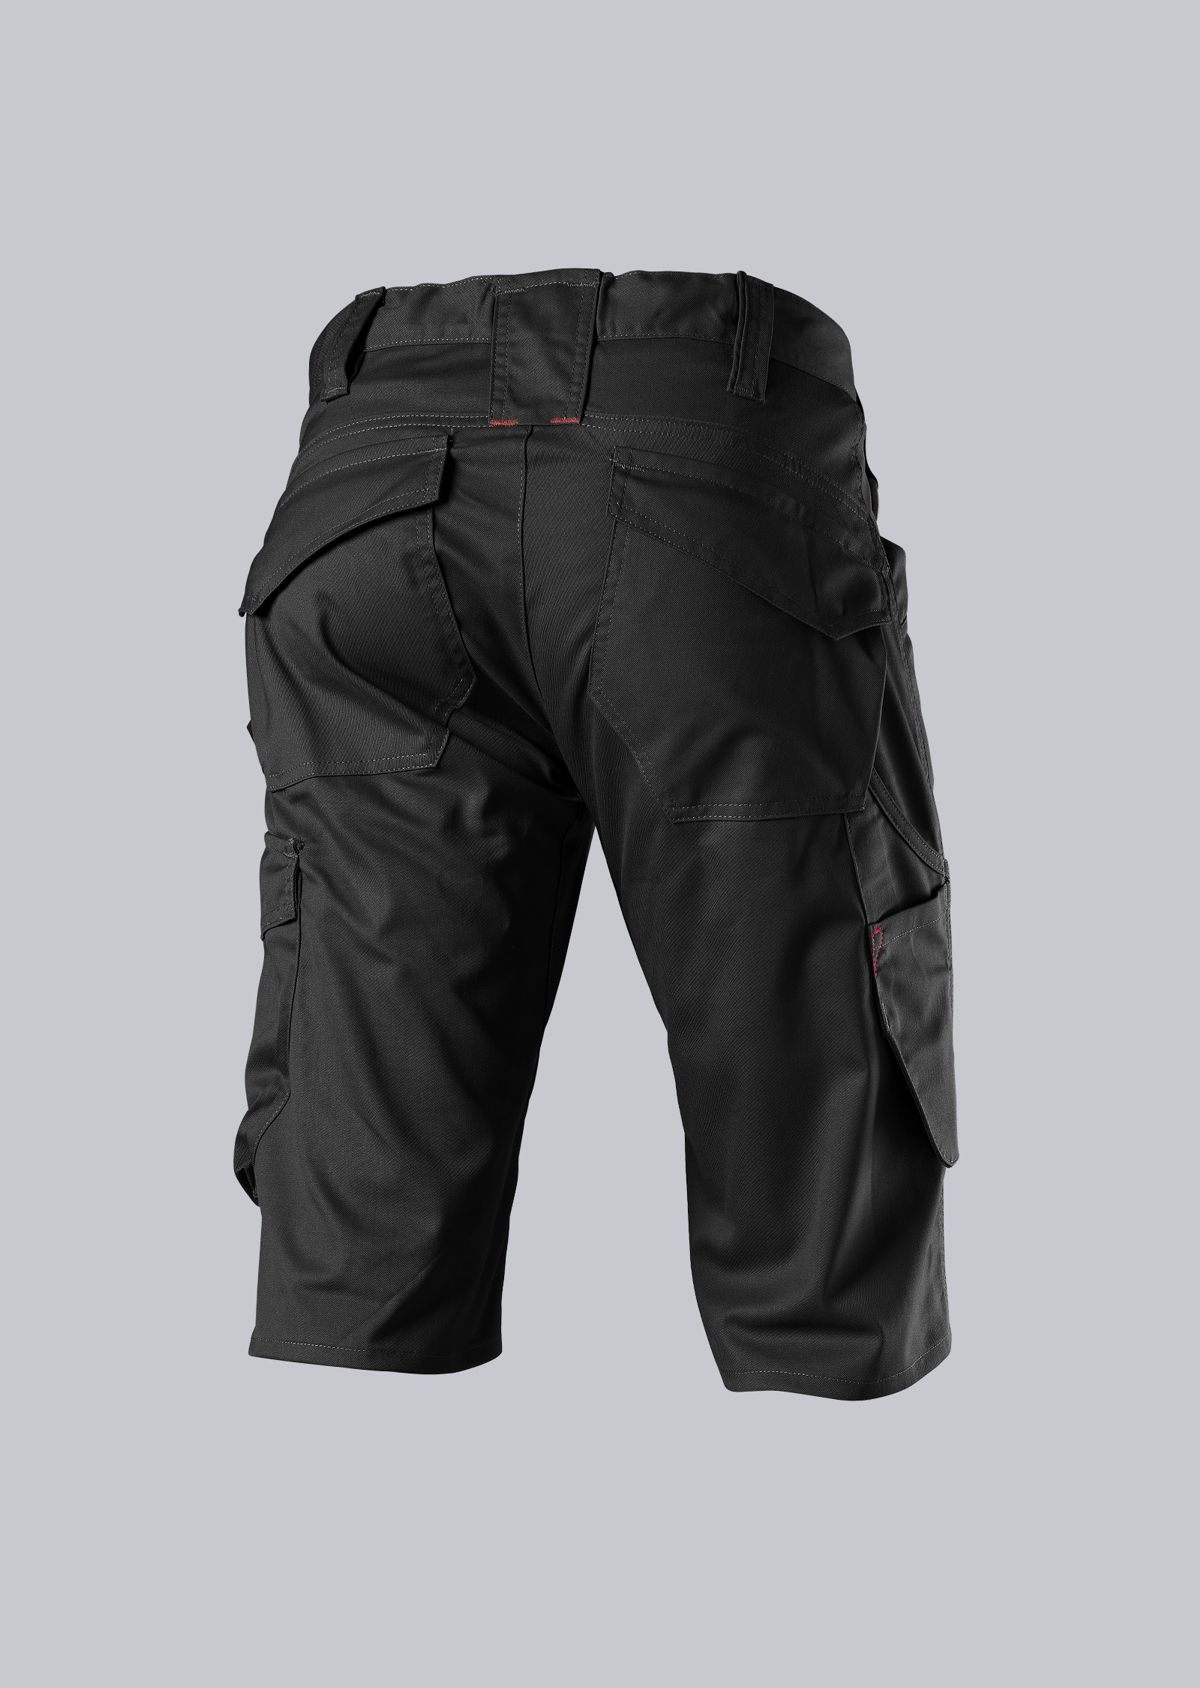 BP® Lightweight shorts